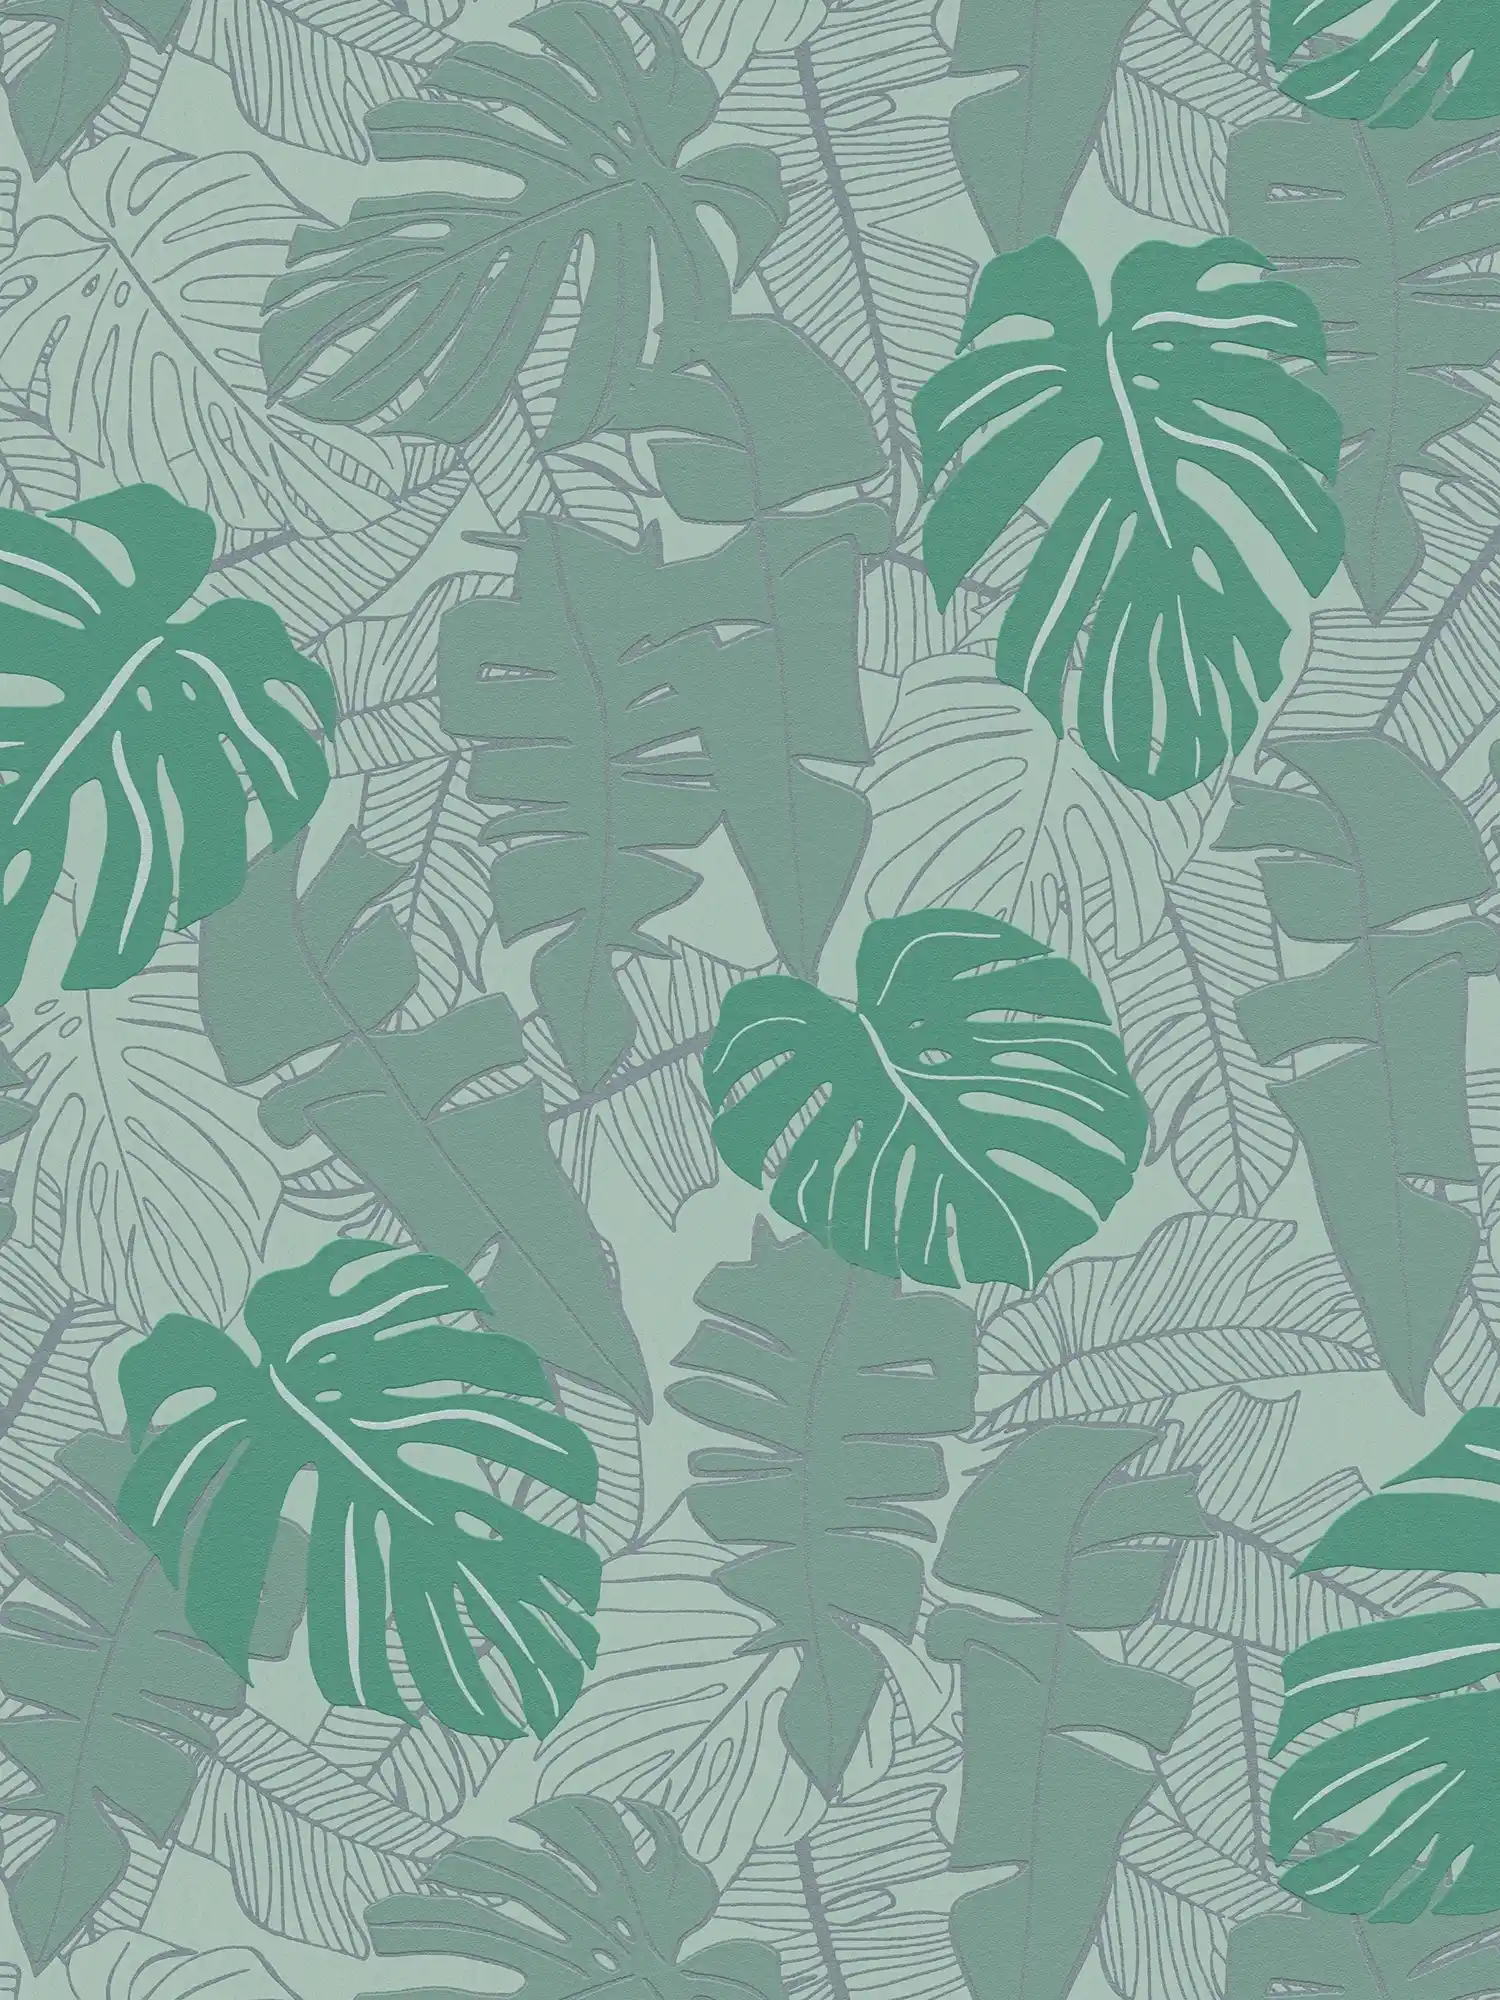 Jungle behang met glanzend patroon - groen, metallic
